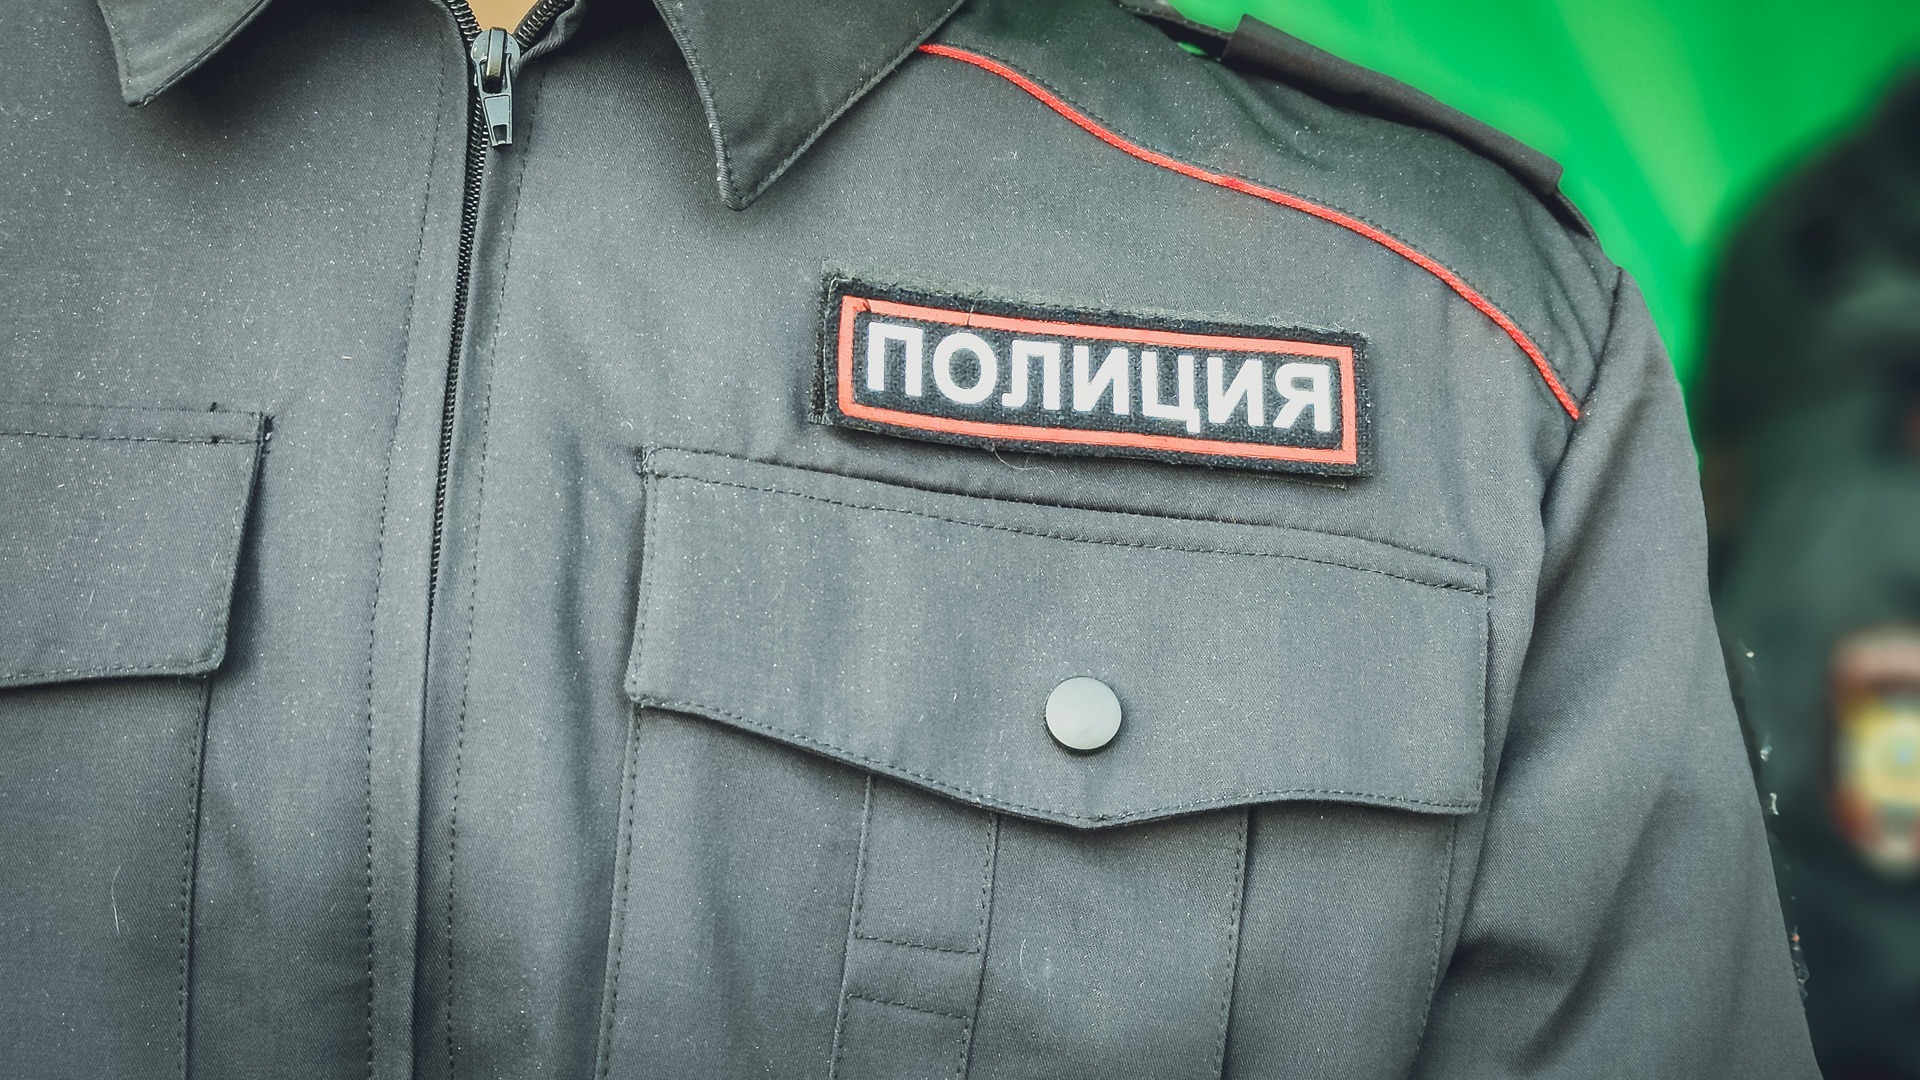 Двух мигранток подозревают в сбыте наркотиков в Нижнем Новгороде